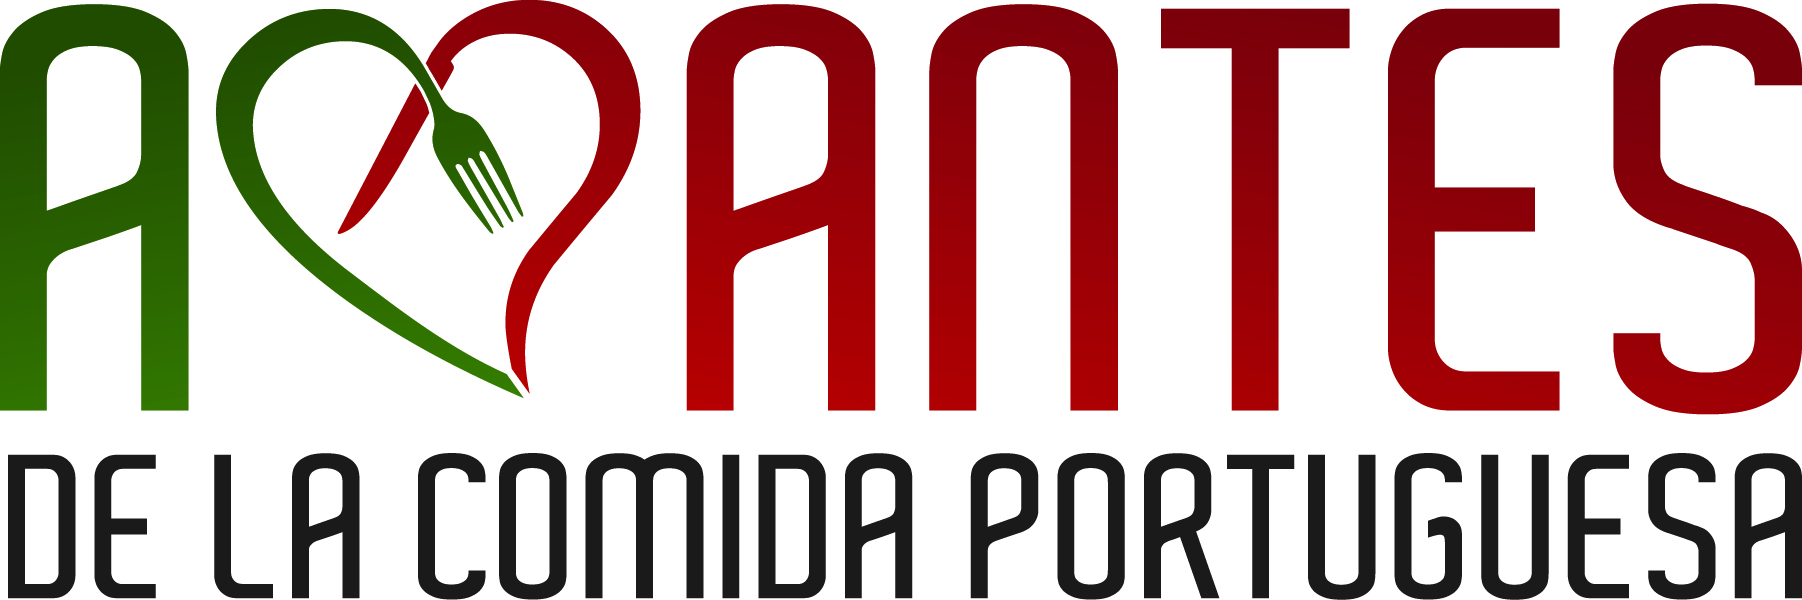 Logo - Amantes de la Comida Portuguesa con los colores de la bandera portuguesa, verde y rojo